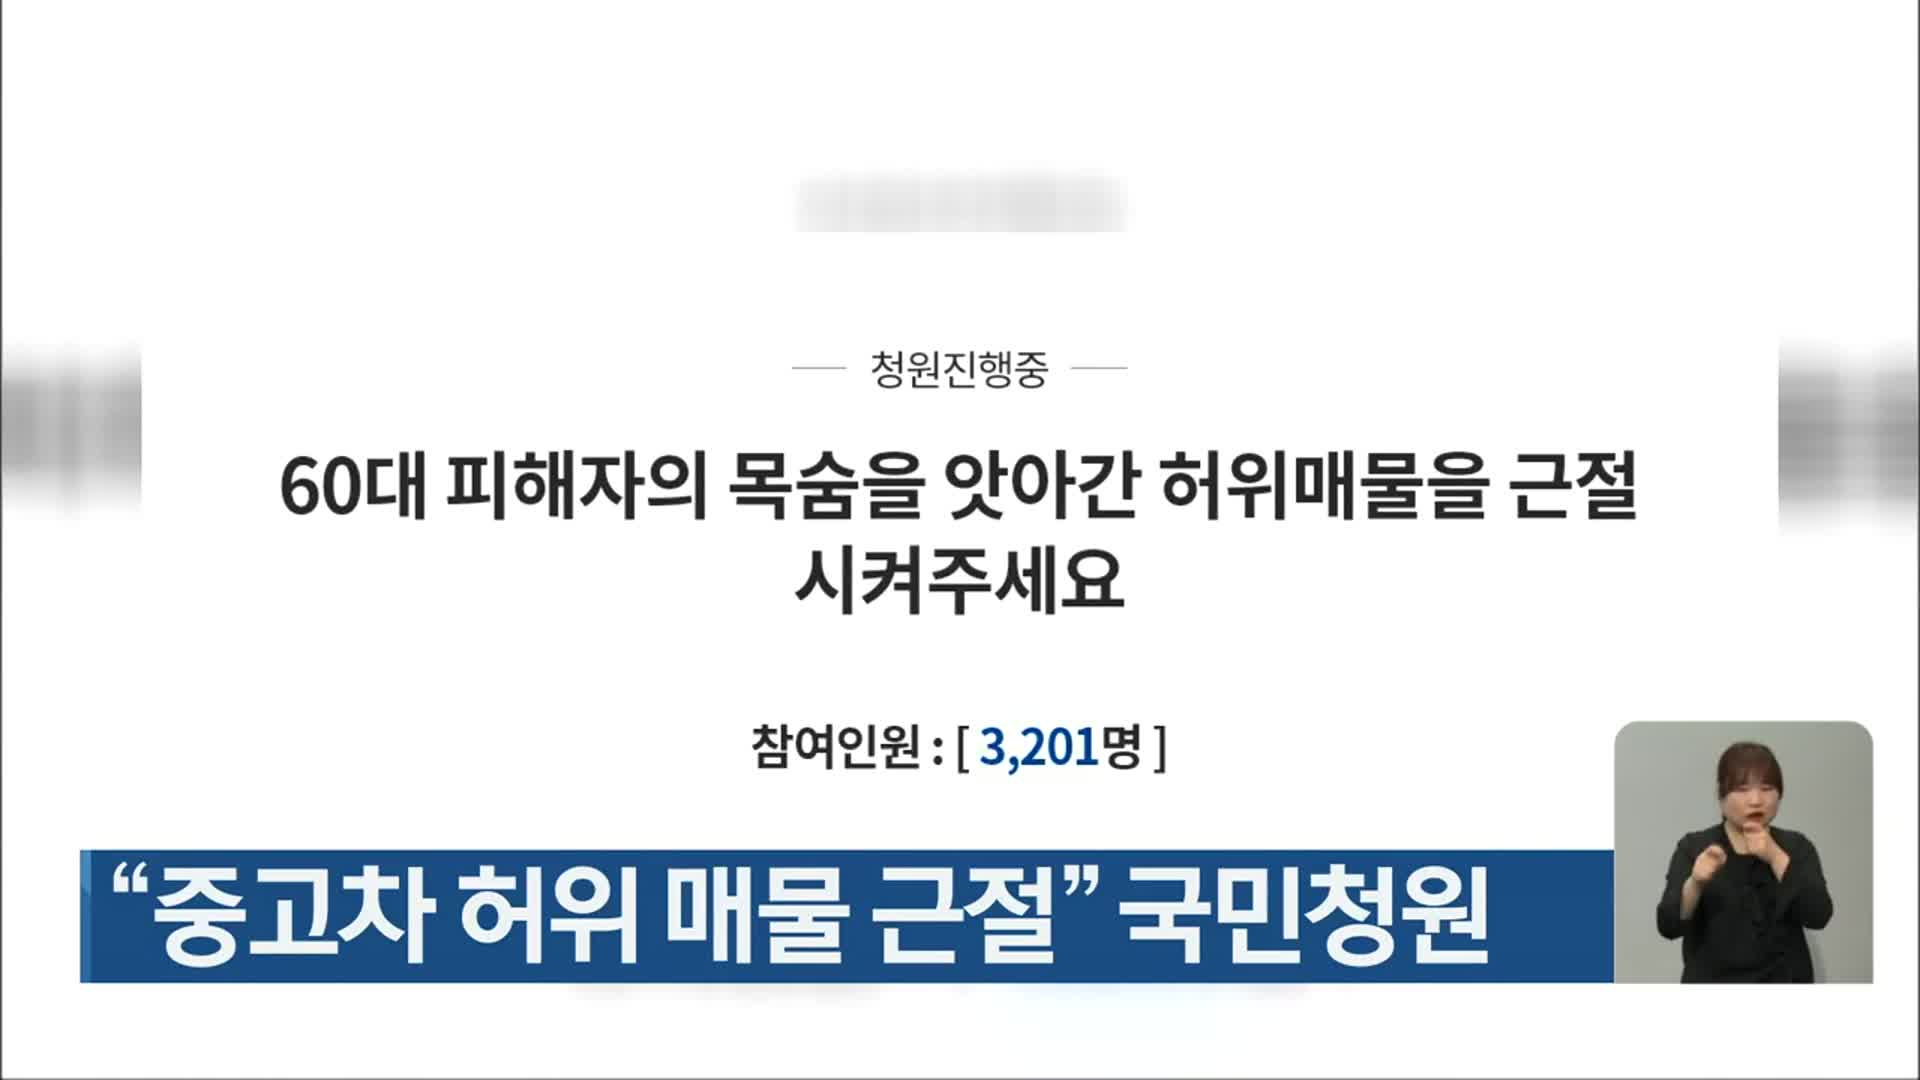 “중고차 허위 매물 근절” 국민청원